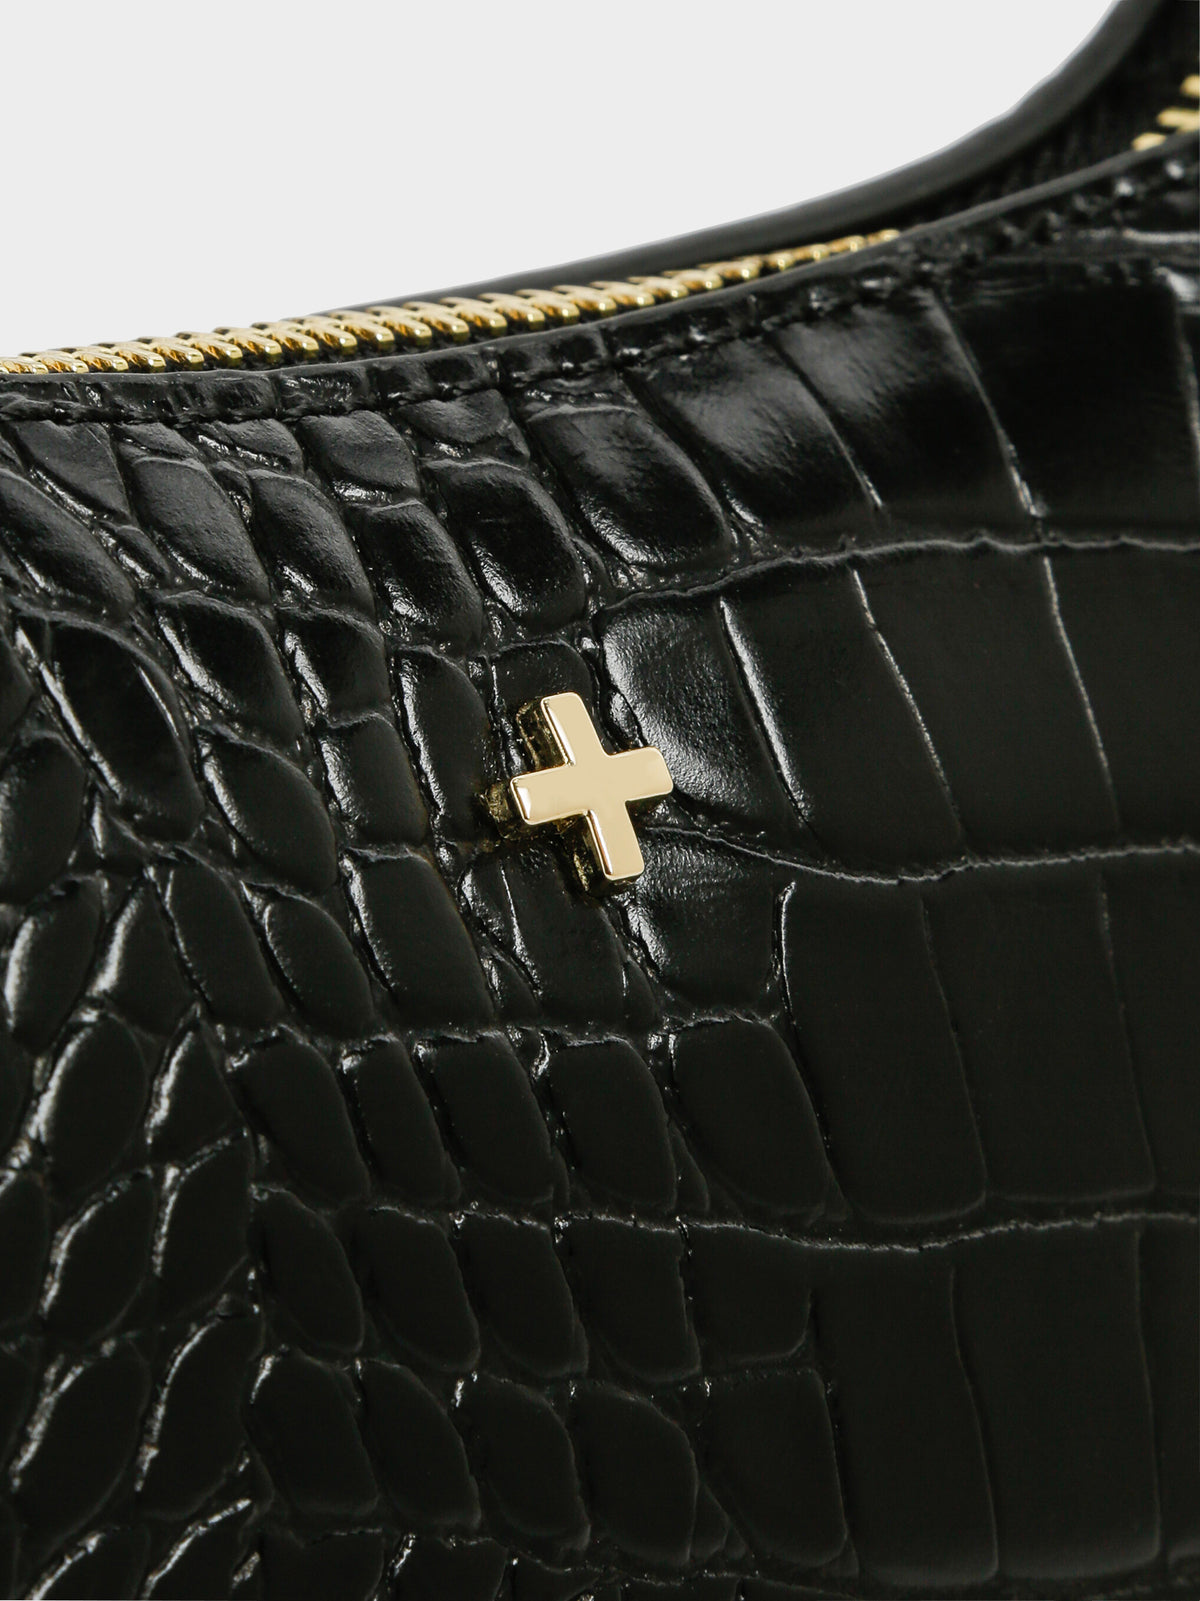 Danni Croc Shoulder Bag in Black